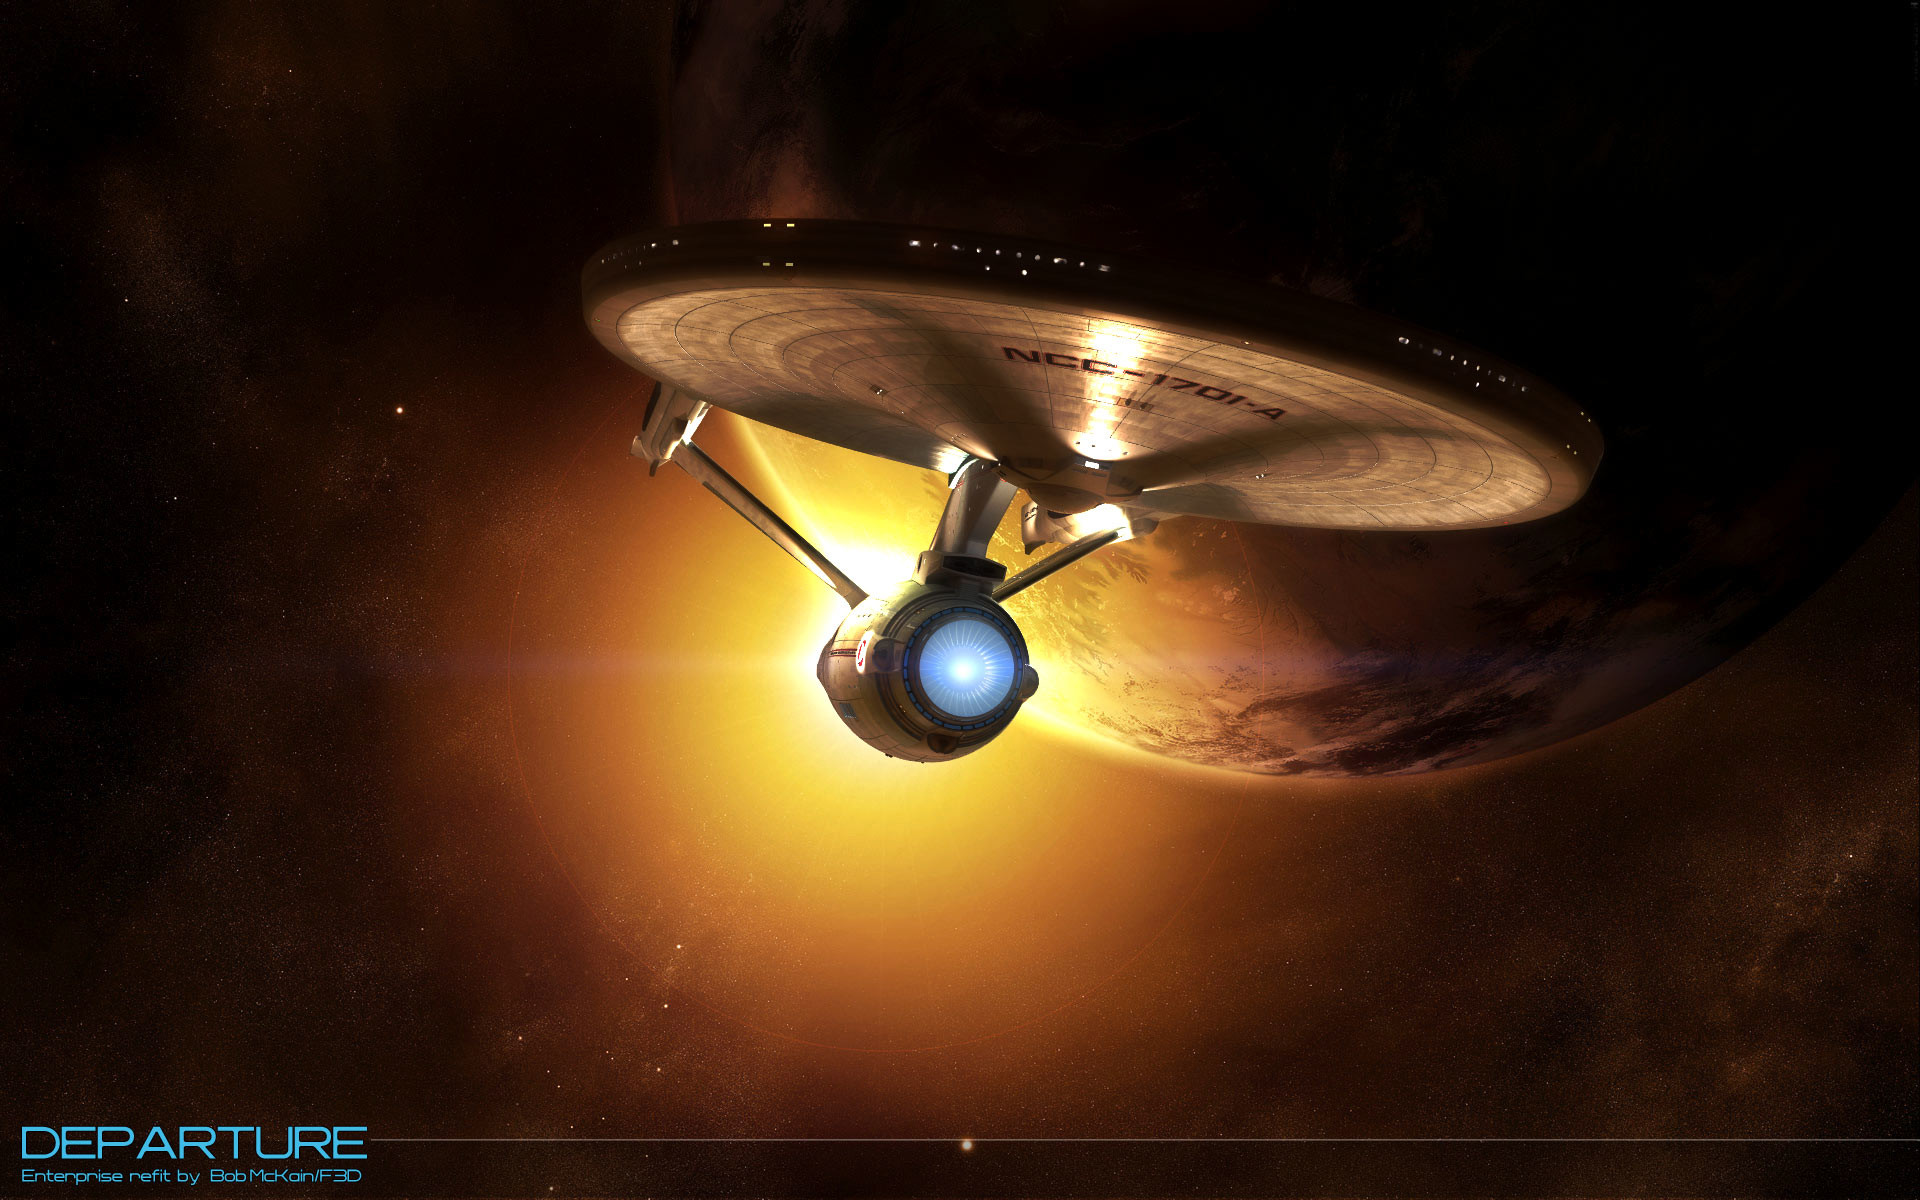 Star Trek Ships Firing Enterprise firing 8a 1440×900 wallpaper Star Trek Pinterest Star trek ships, Star trek and Trek